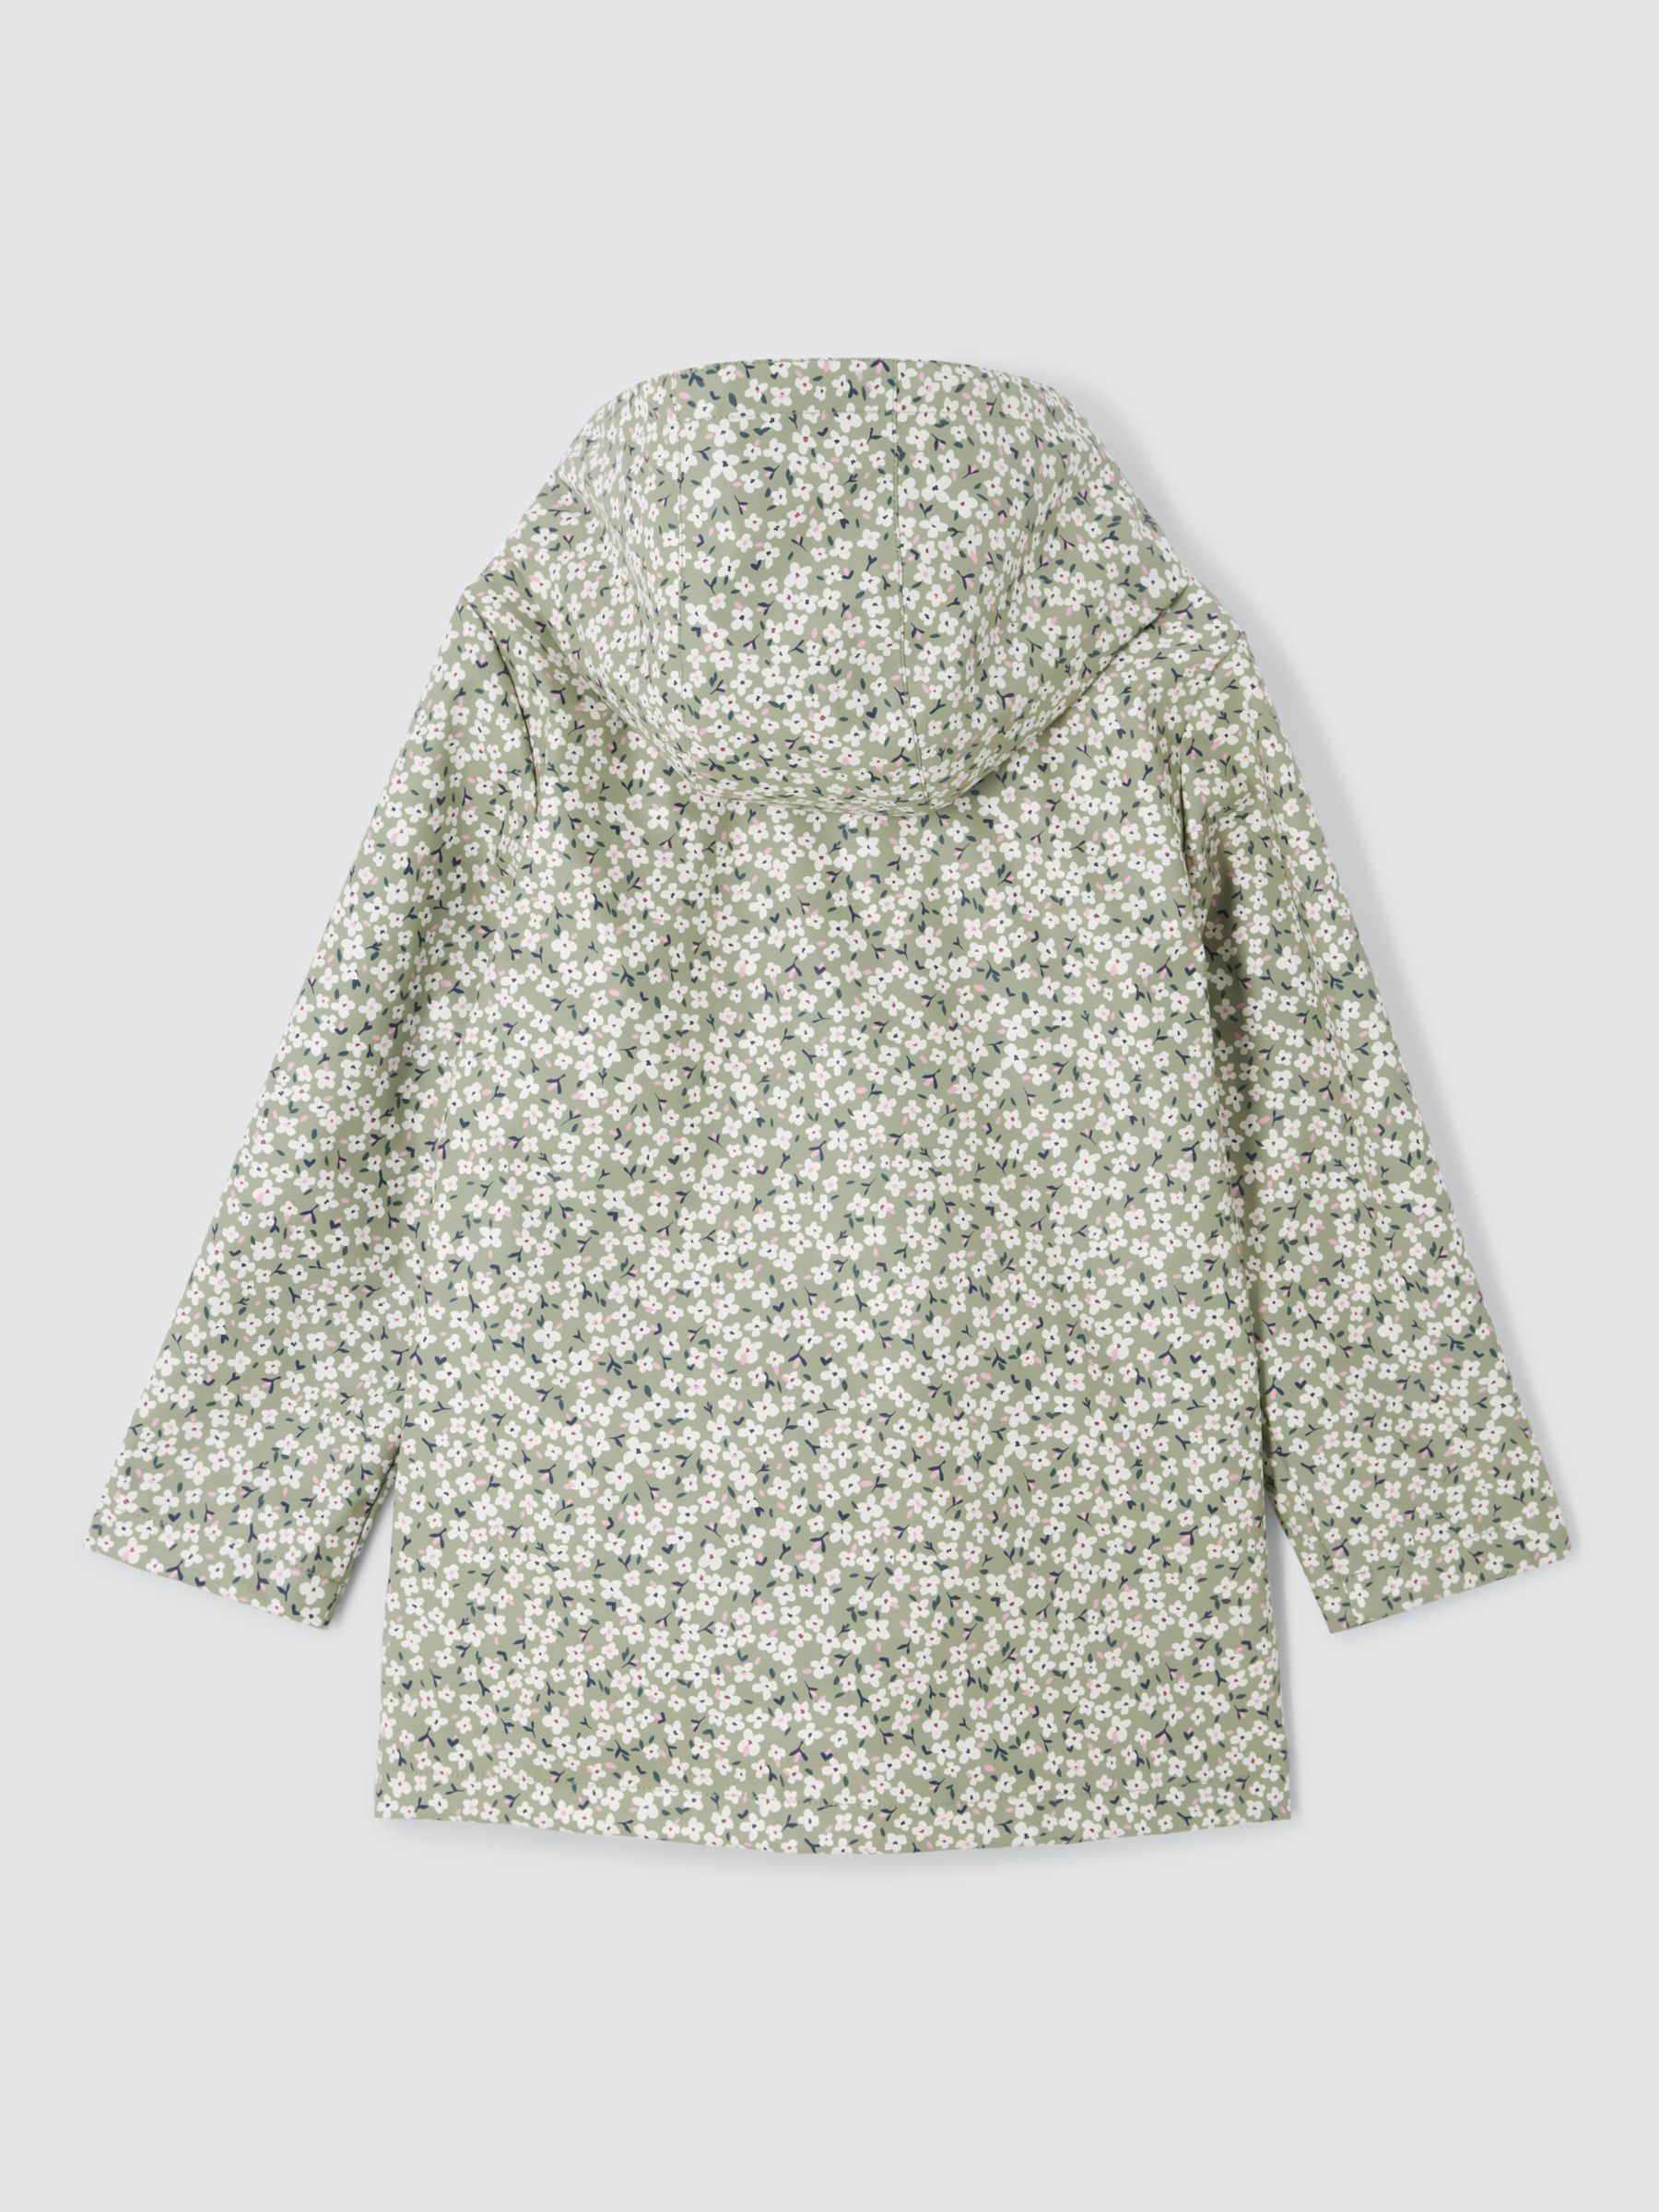 John Lewis Kids' Floral Print Shower Resistant Hooded Mac, Green/Multi, 8 years